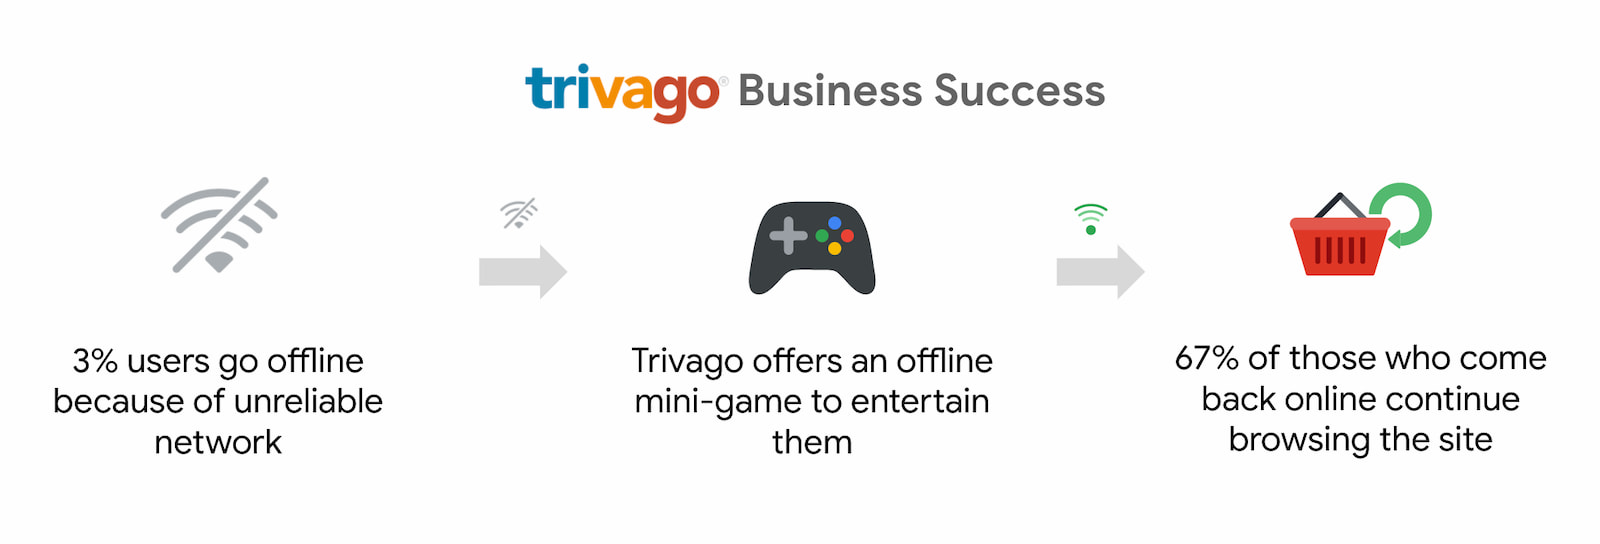 Trivago verzeichnete 67% mehr Nutzer, die zurückgekehrt sind und weiter im Internet surfen.